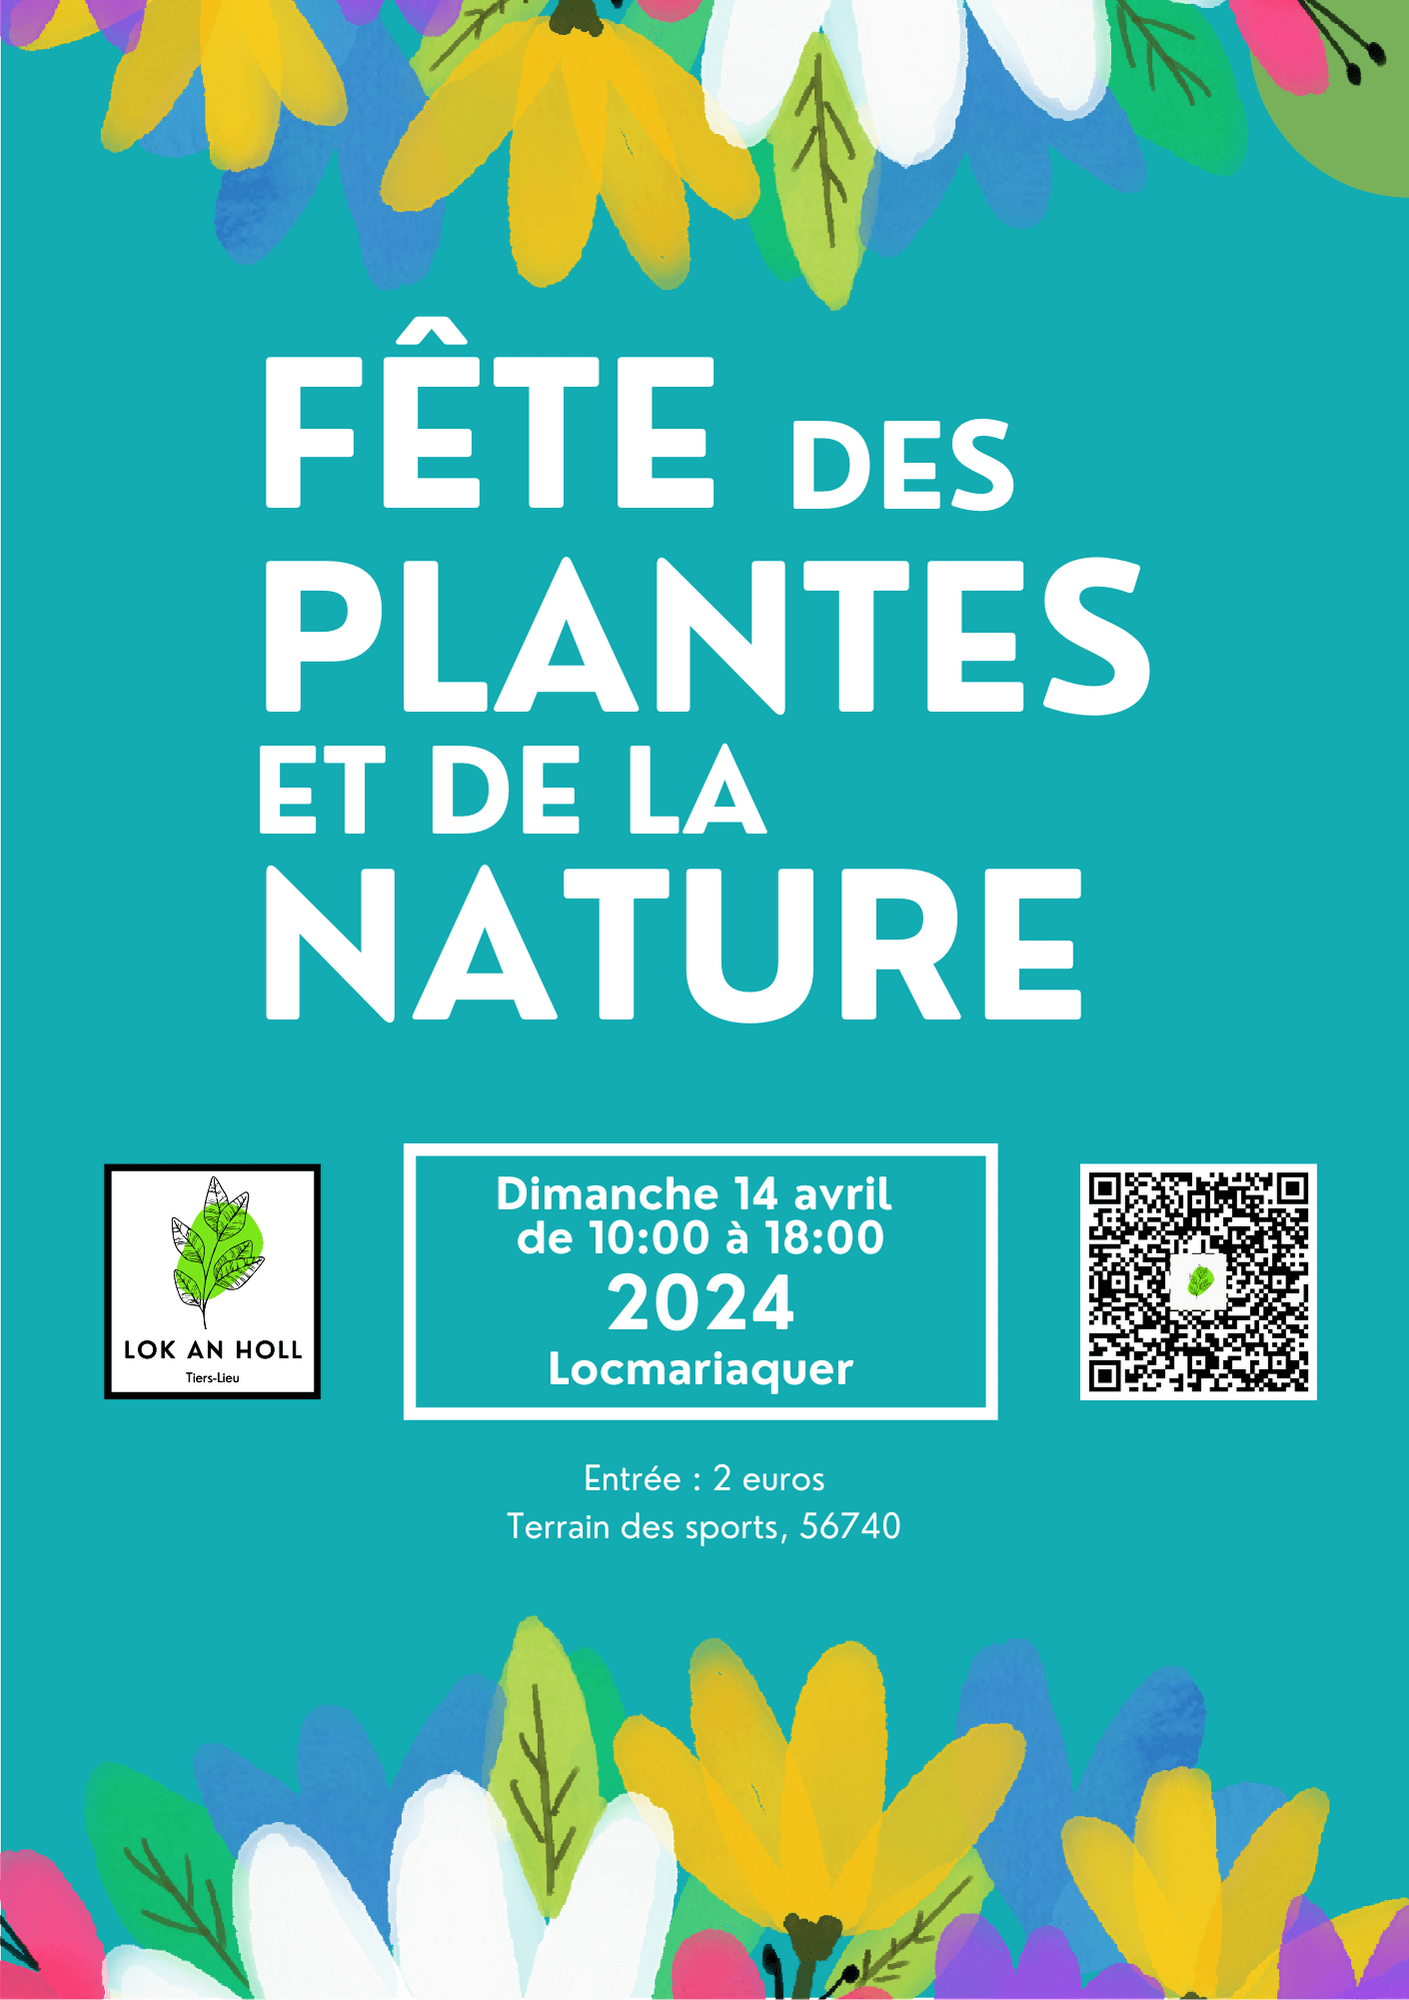 You are currently viewing Fête des plantes à Locmariaquer en 2024